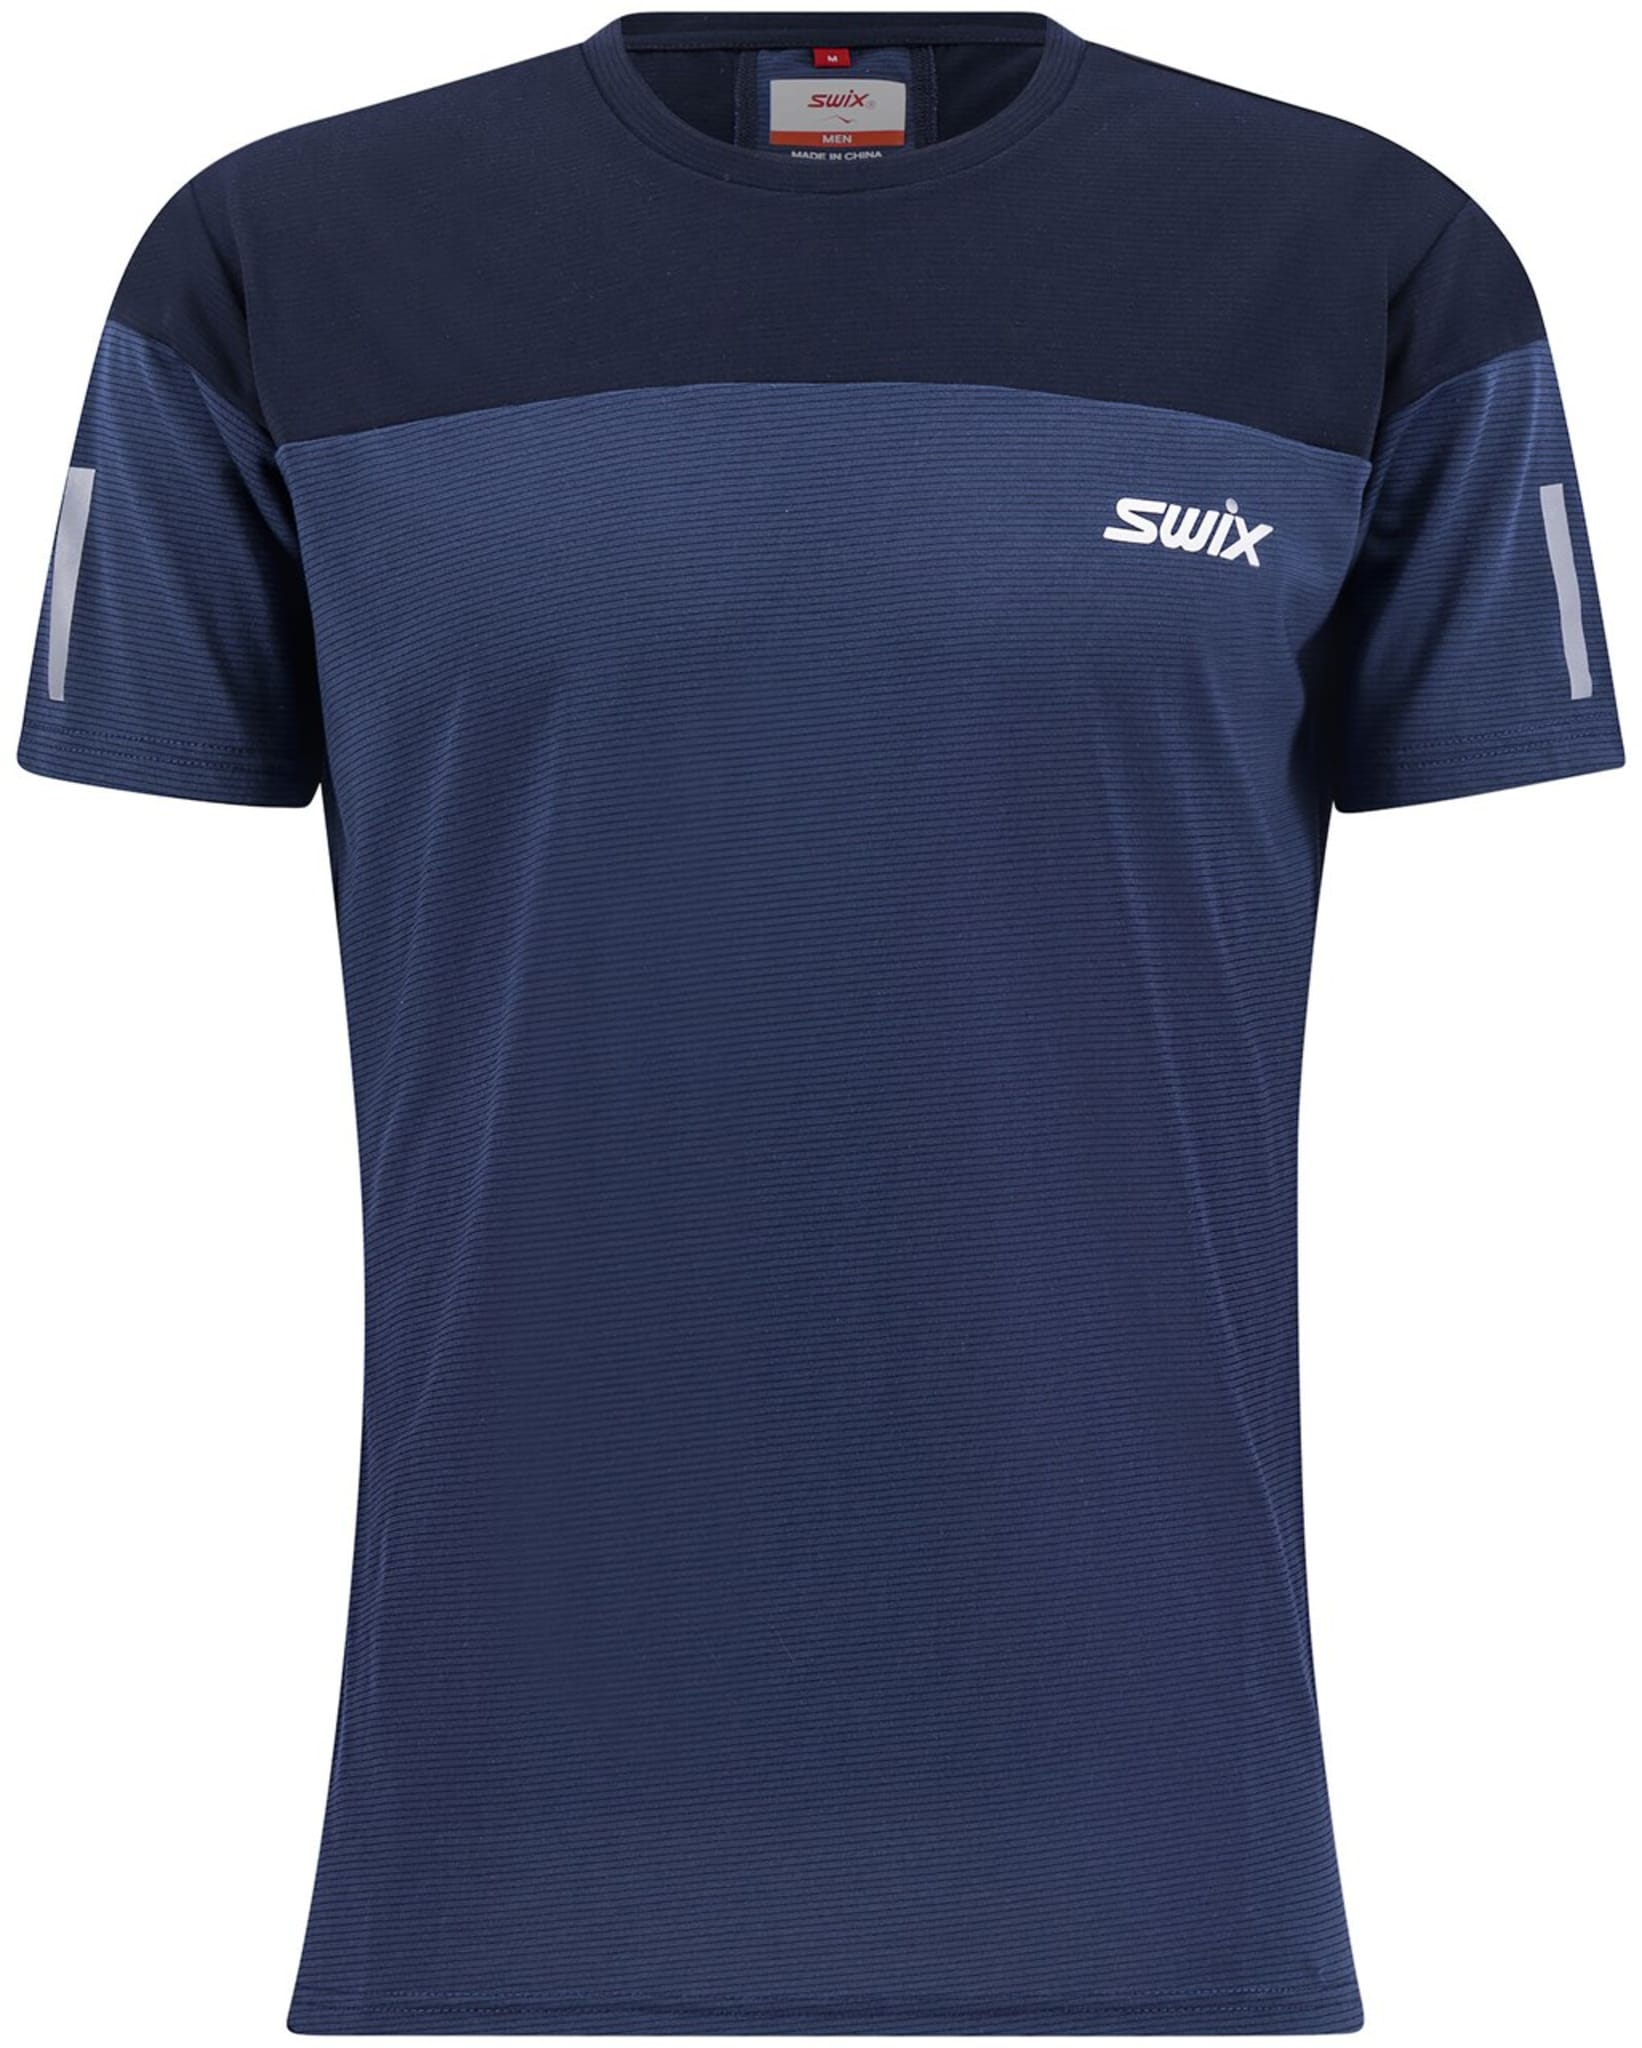 Motion Sport t-shirt er en lett, komfortabel T-skjorte til variert trening, og fritid.